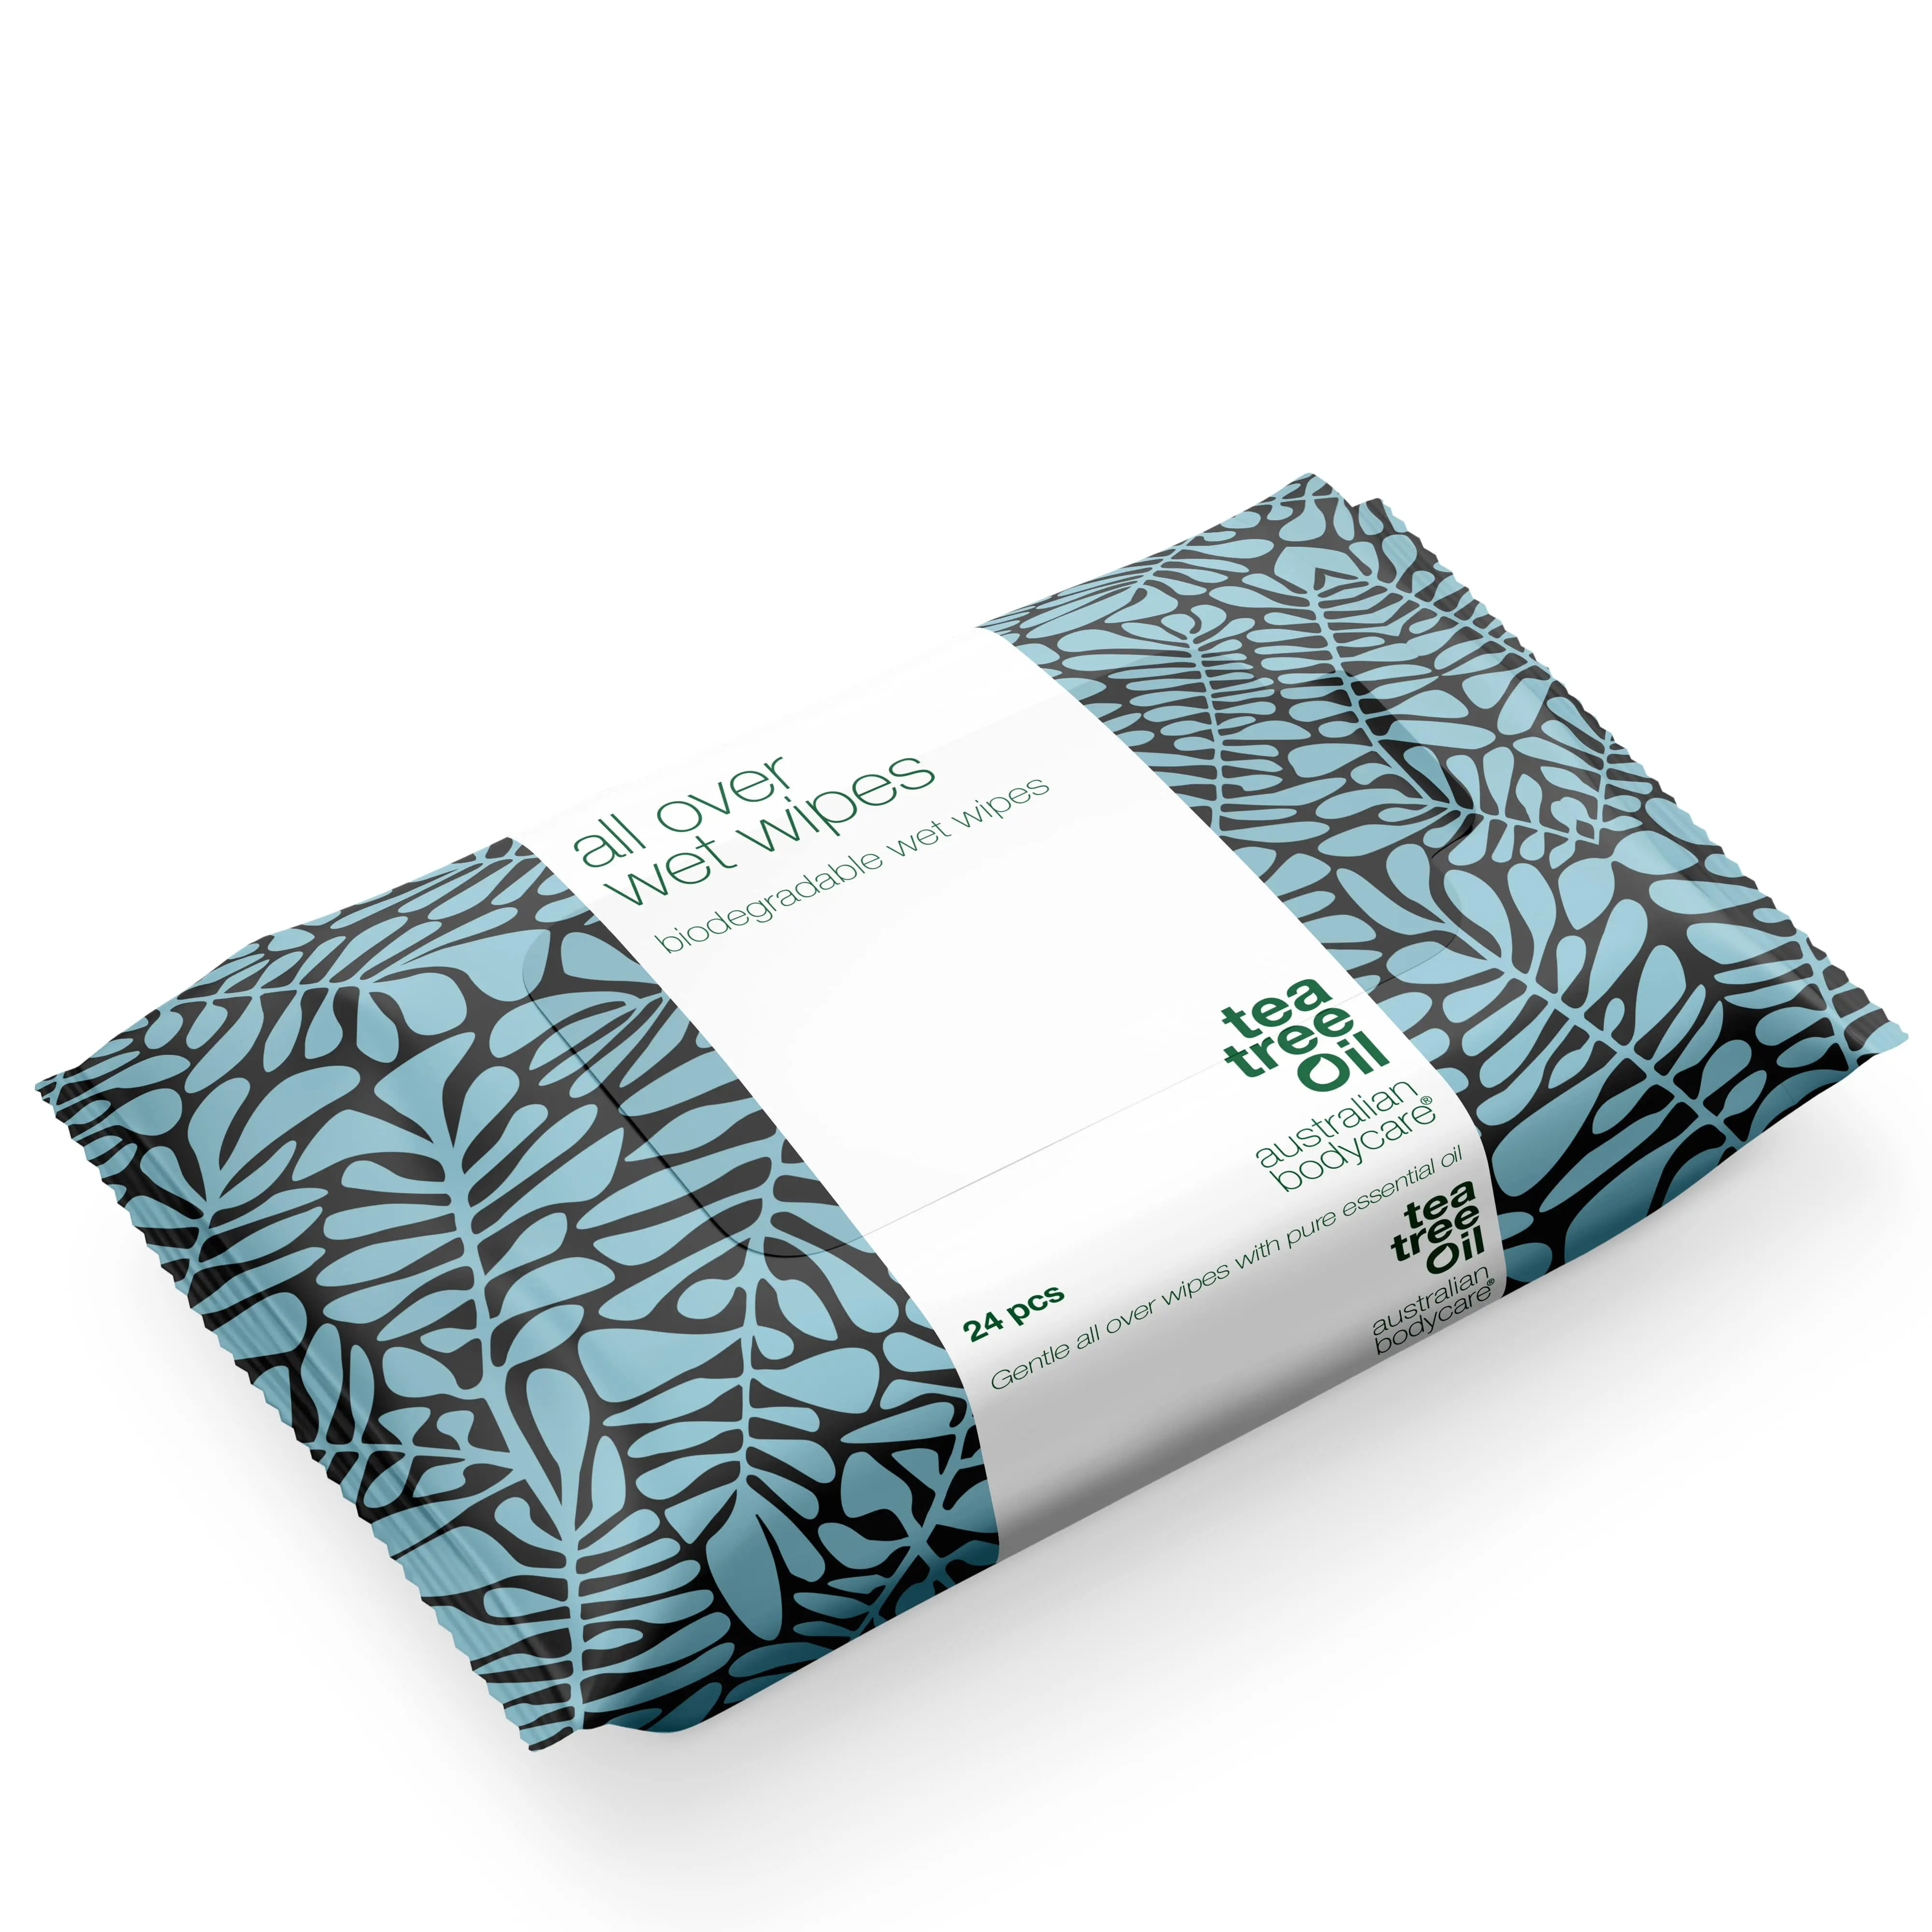 Биоразлагаемые влажные салфетки для масла чайного дерева оптом: 24 шт. Взрослые влажные салфетки для пота, грязи, макияжа. Освежающий, увлажняющий